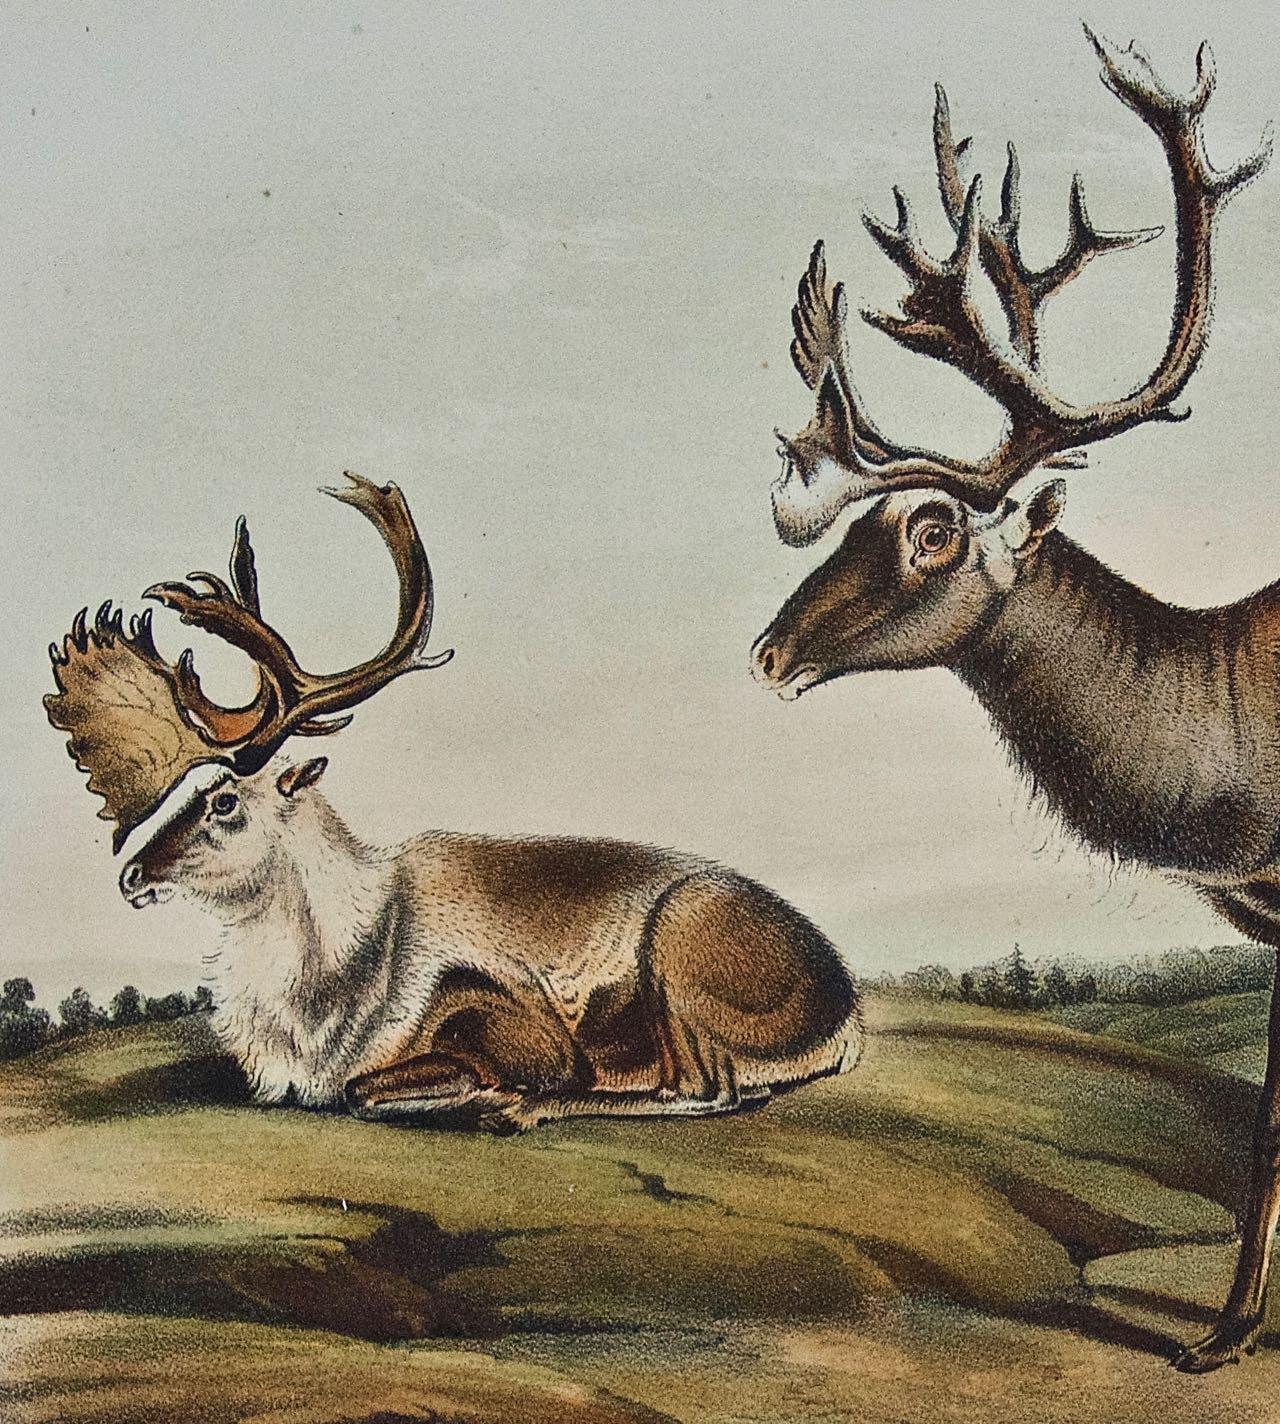 Dies ist eine originale handkolorierte Vierbeiner-Lithographie von John James Audubon aus dem 19. Jahrhundert mit dem Titel 